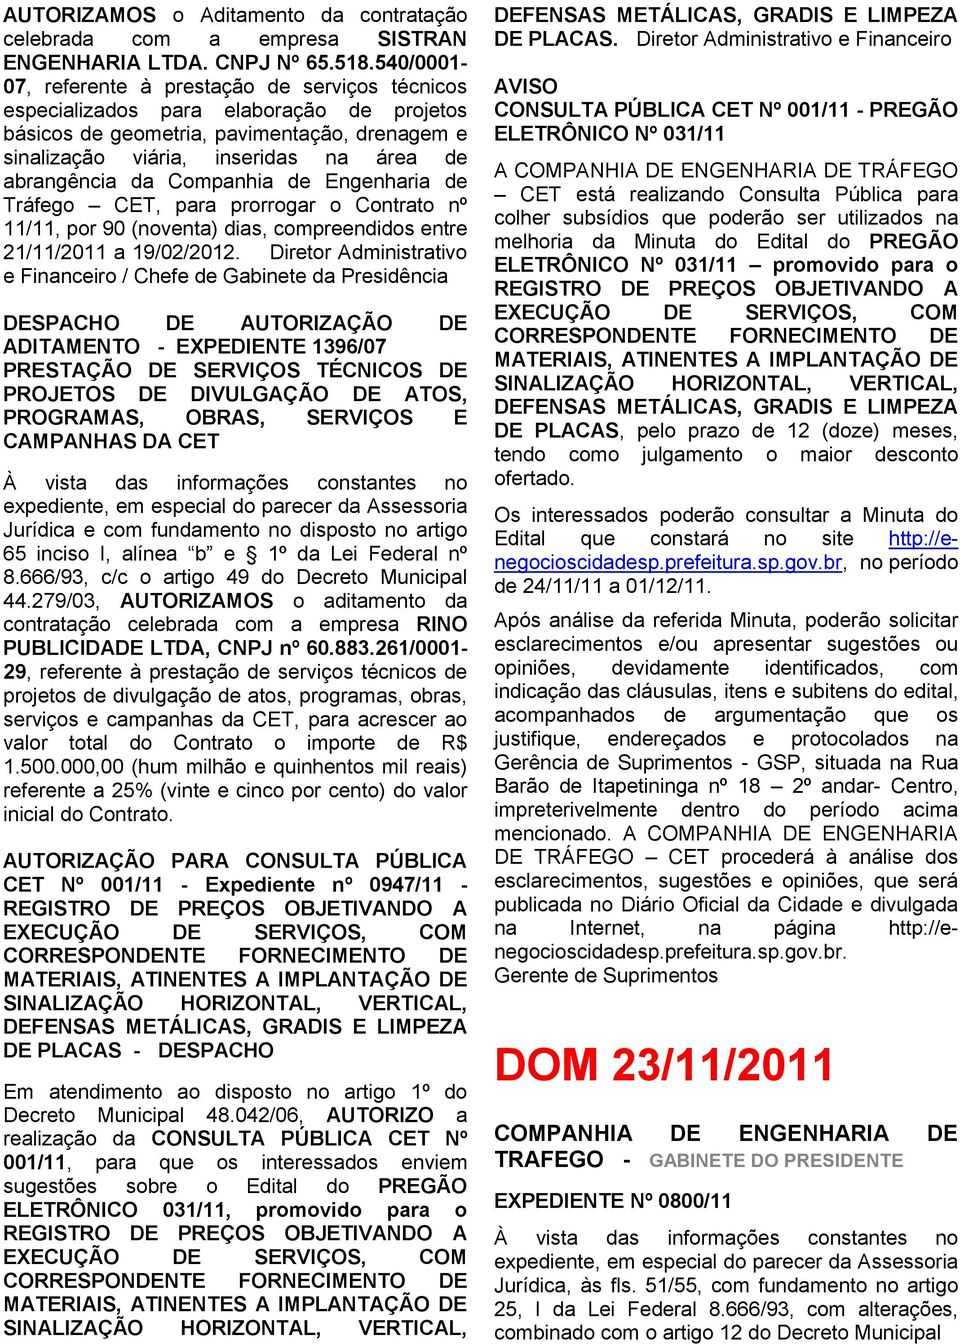 da Companhia de Engenharia de Tráfego CET, para prorrogar o Contrato nº 11/11, por 90 (noventa) dias, compreendidos entre 21/11/2011 a 19/02/2012.